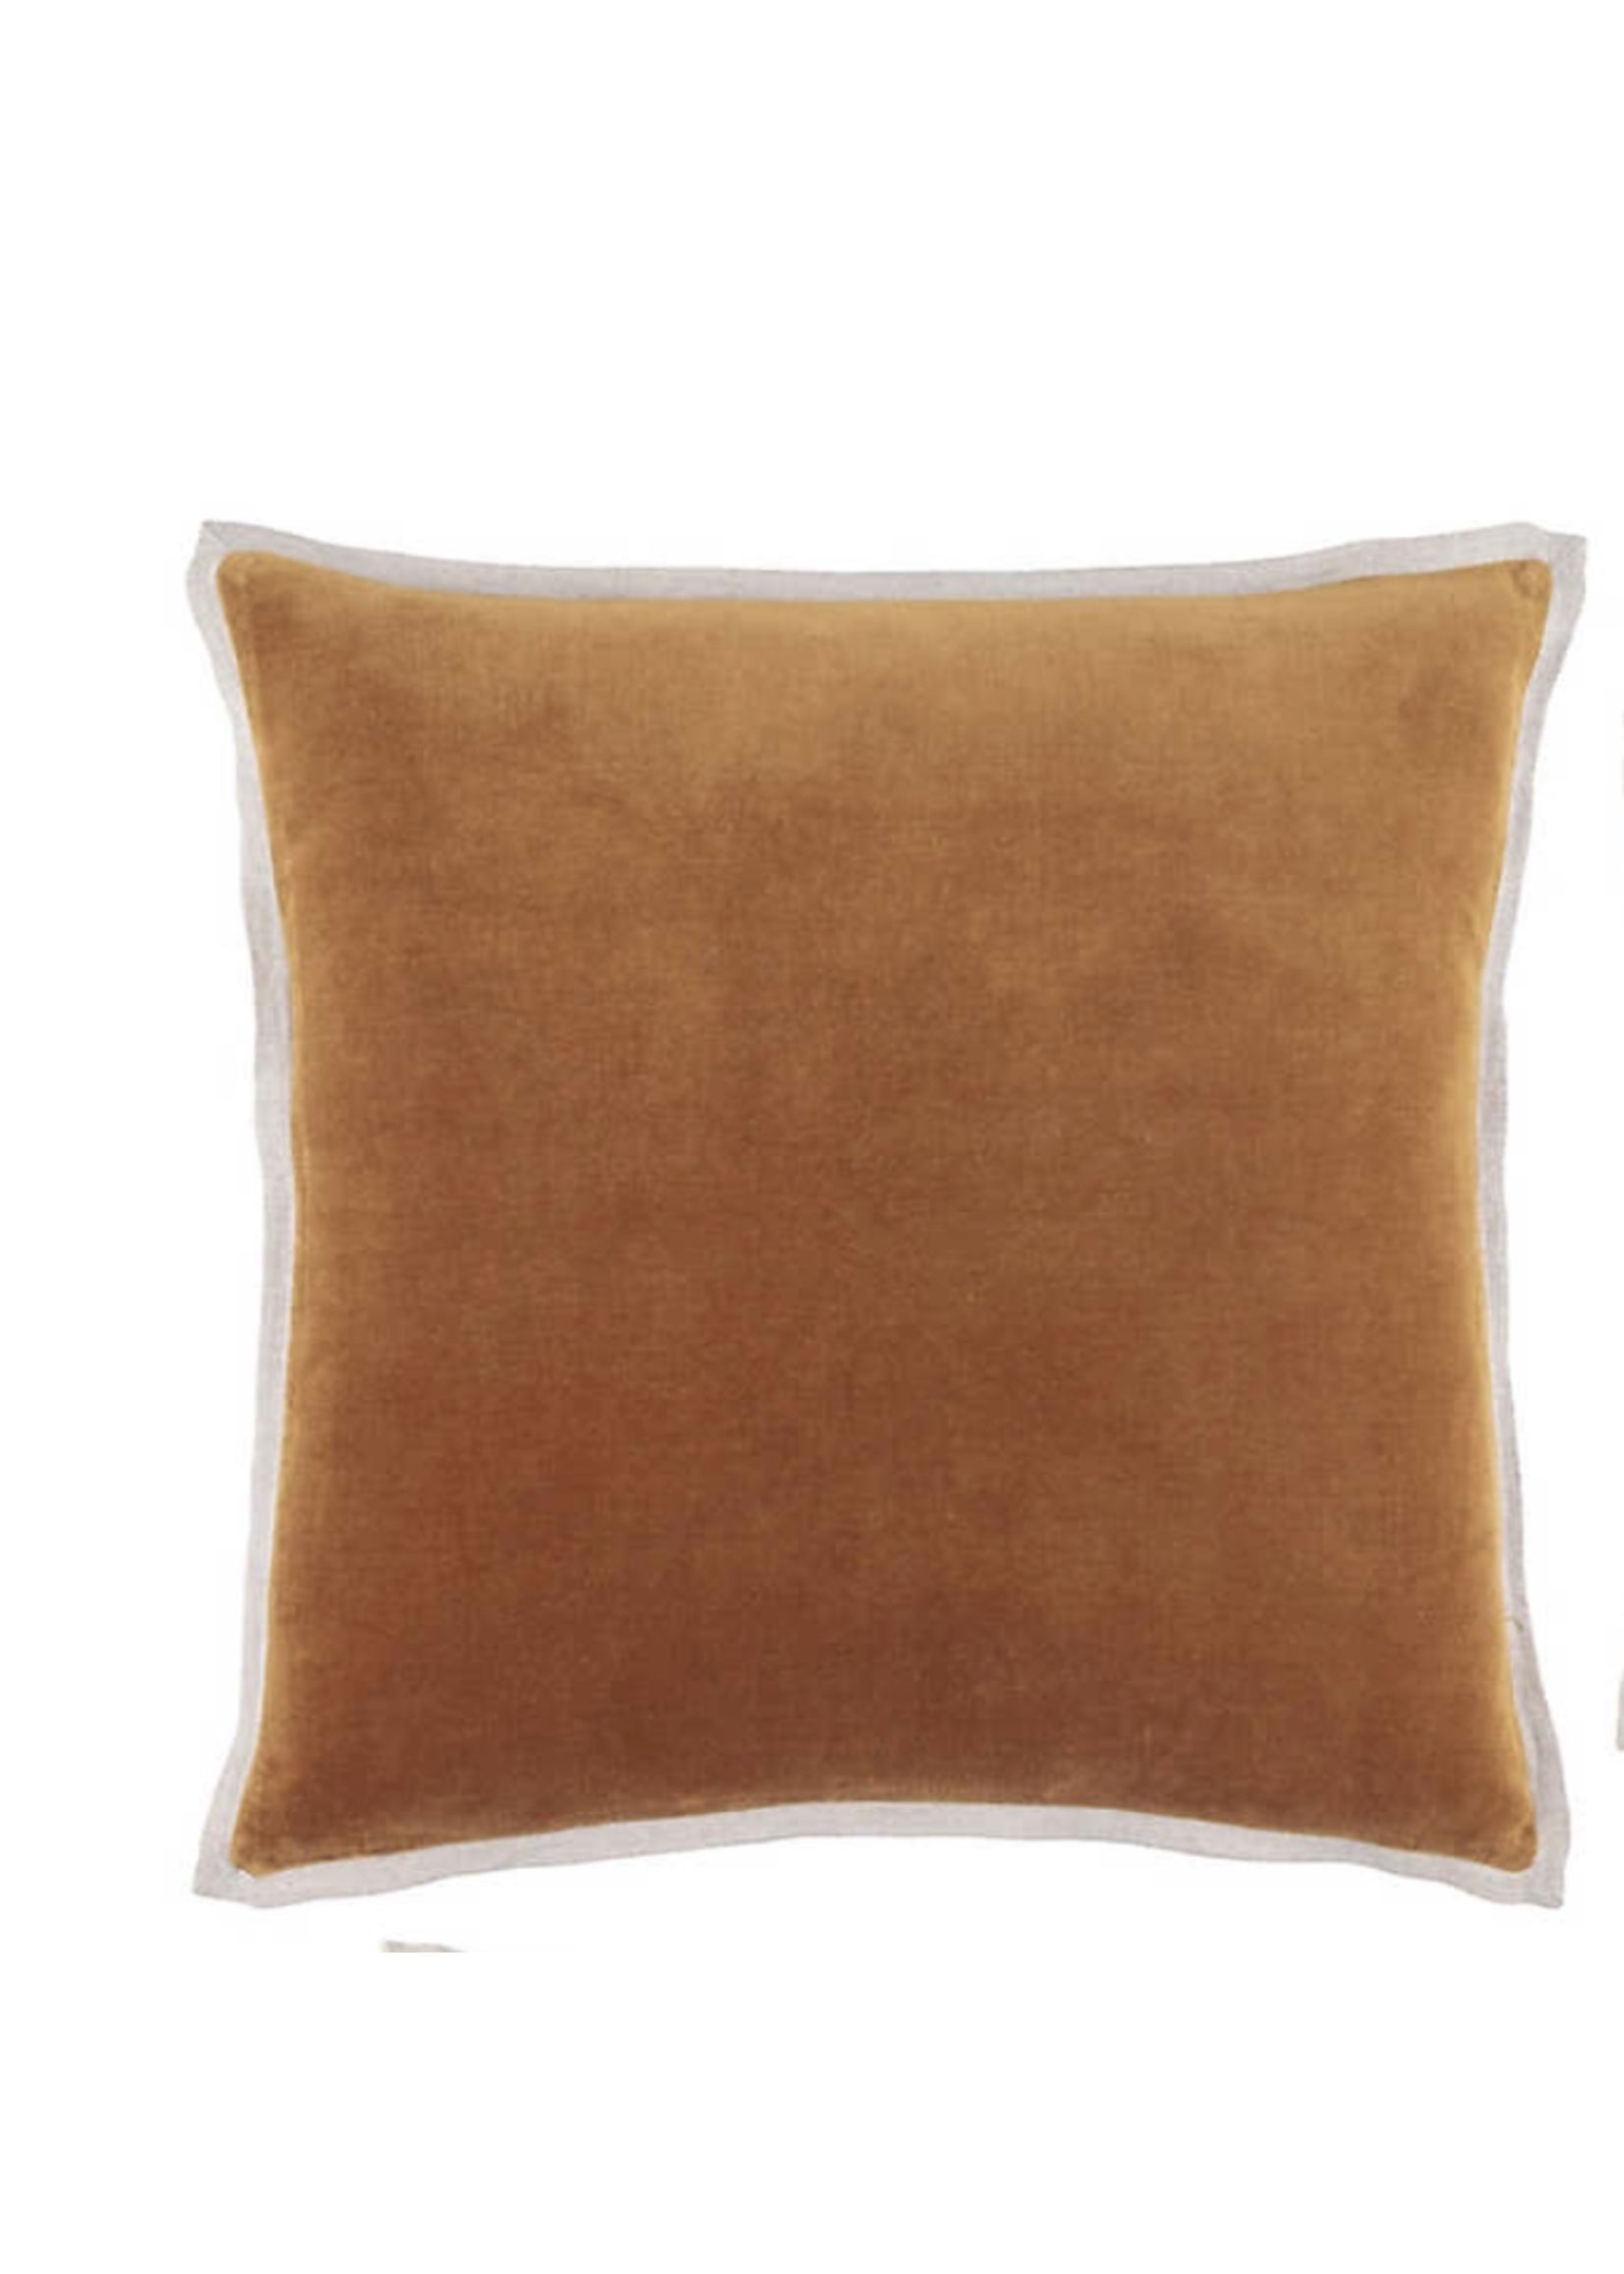 Gehry Velvet/Linen Caramel Pillow 22"